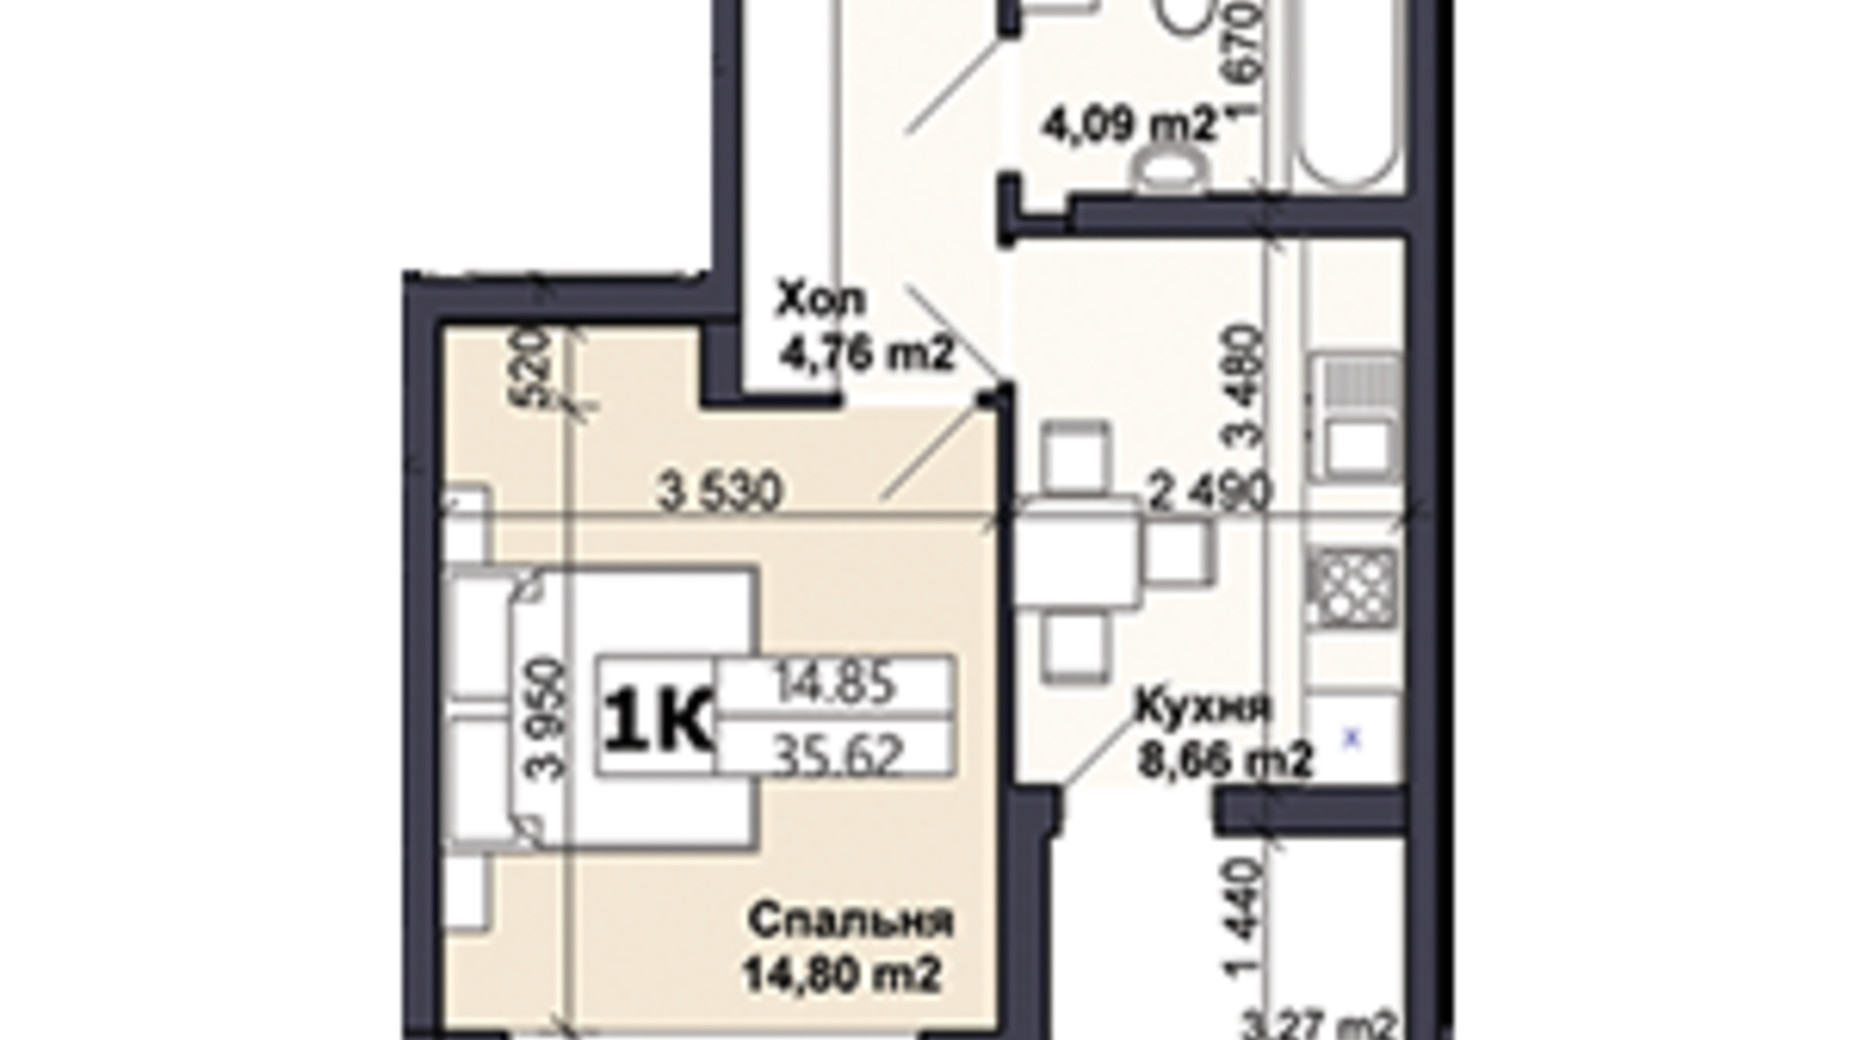 Планування 1-кімнатної квартири в ЖК Саме той 35.62 м², фото 585407